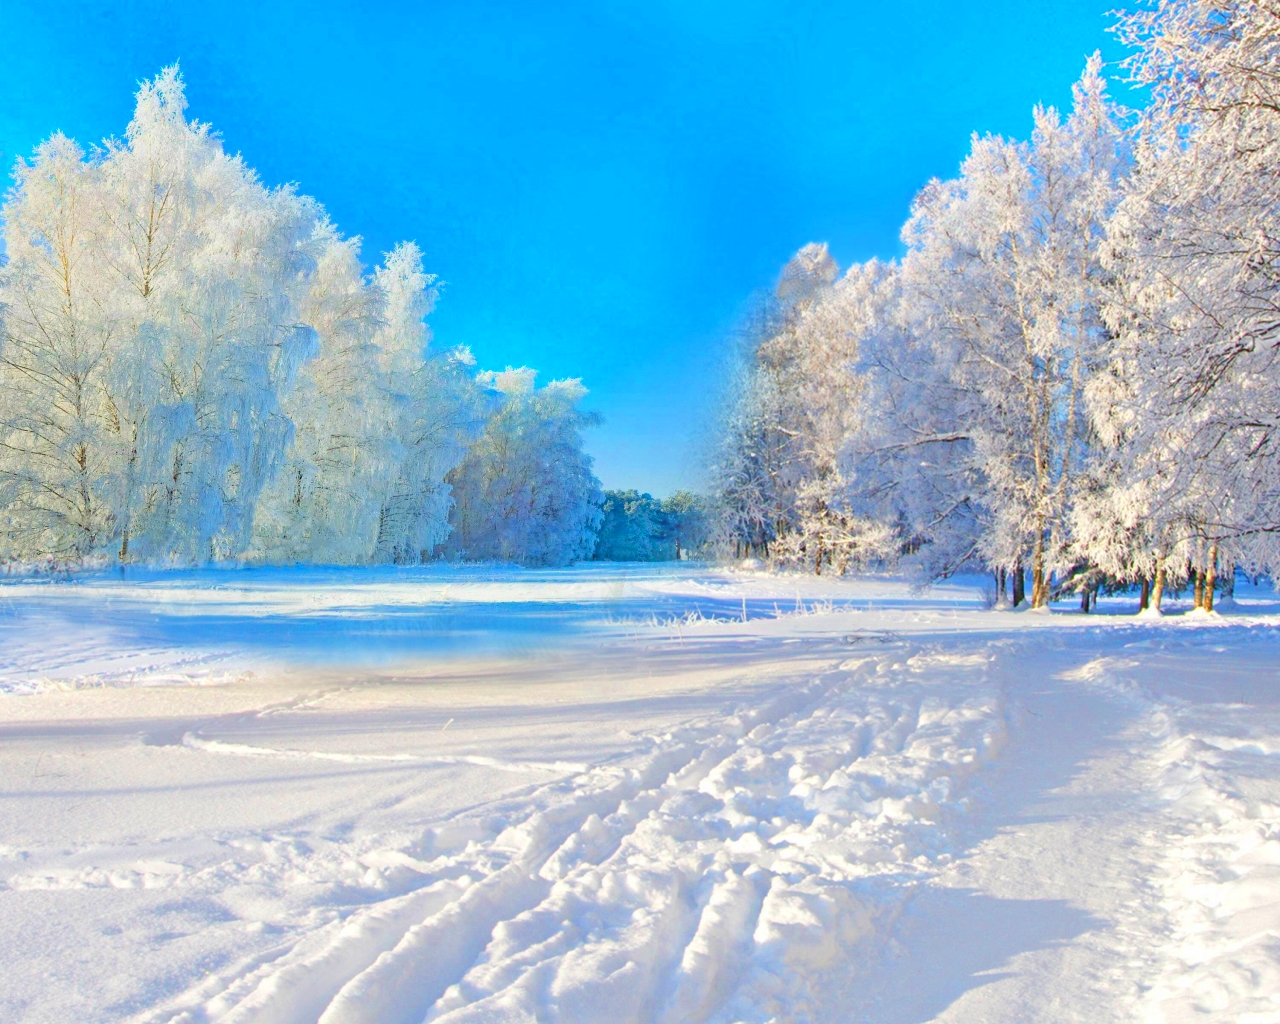 Winter - Winter Wallpaper (40916420) - Fanpop